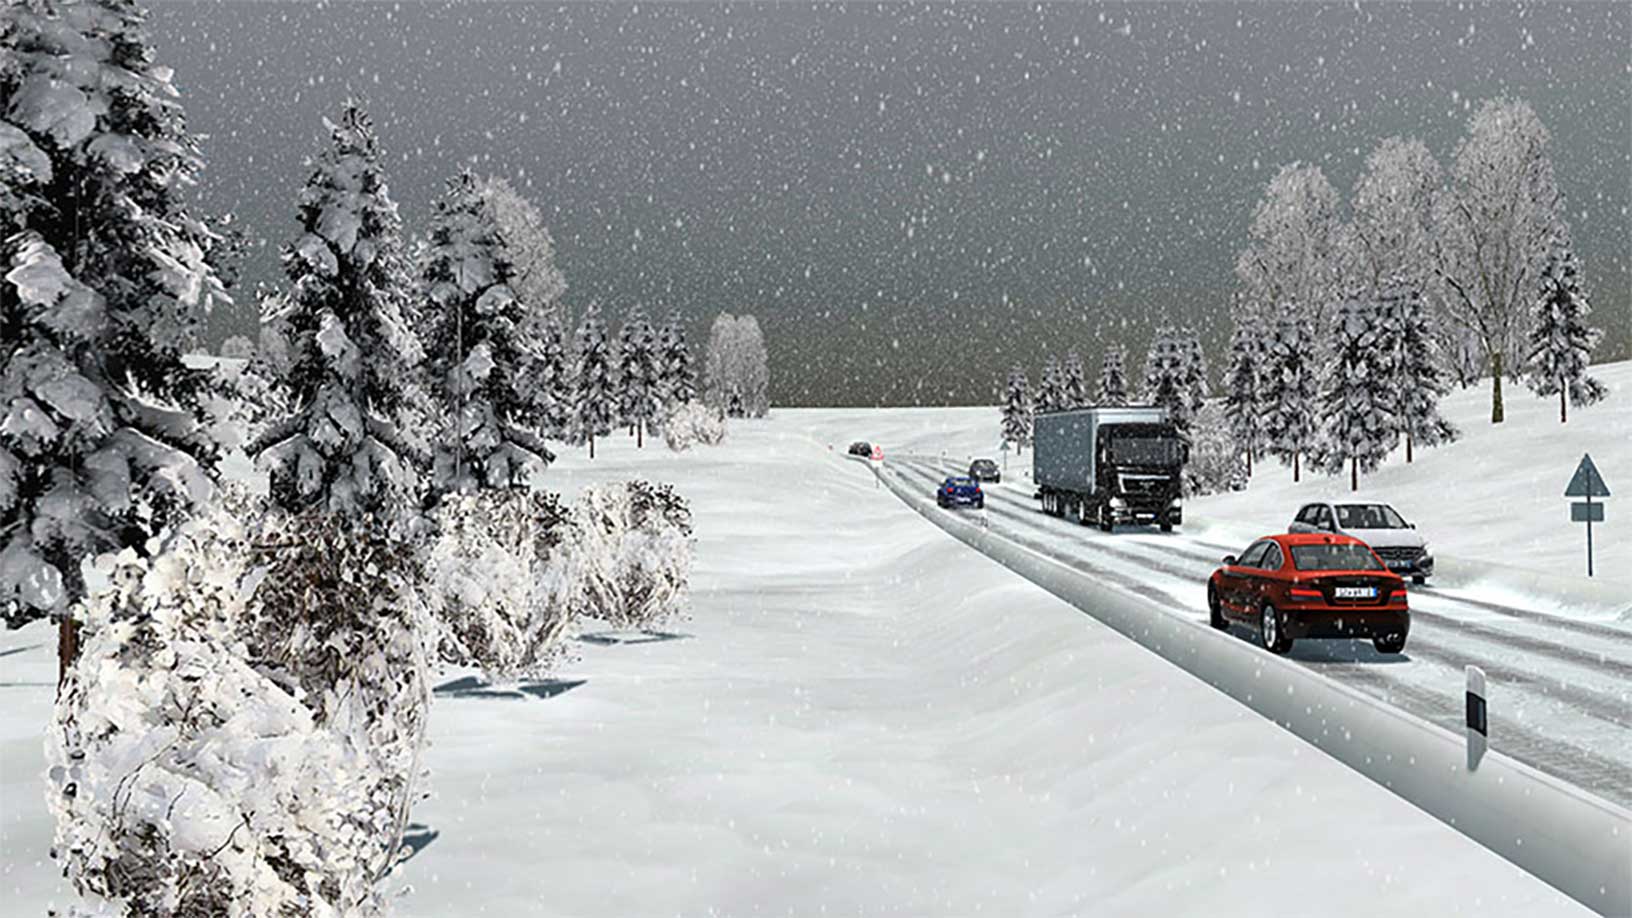 Simulation von Fahrzeugen, die unter kalten, schneereichen Bedingungen fahren